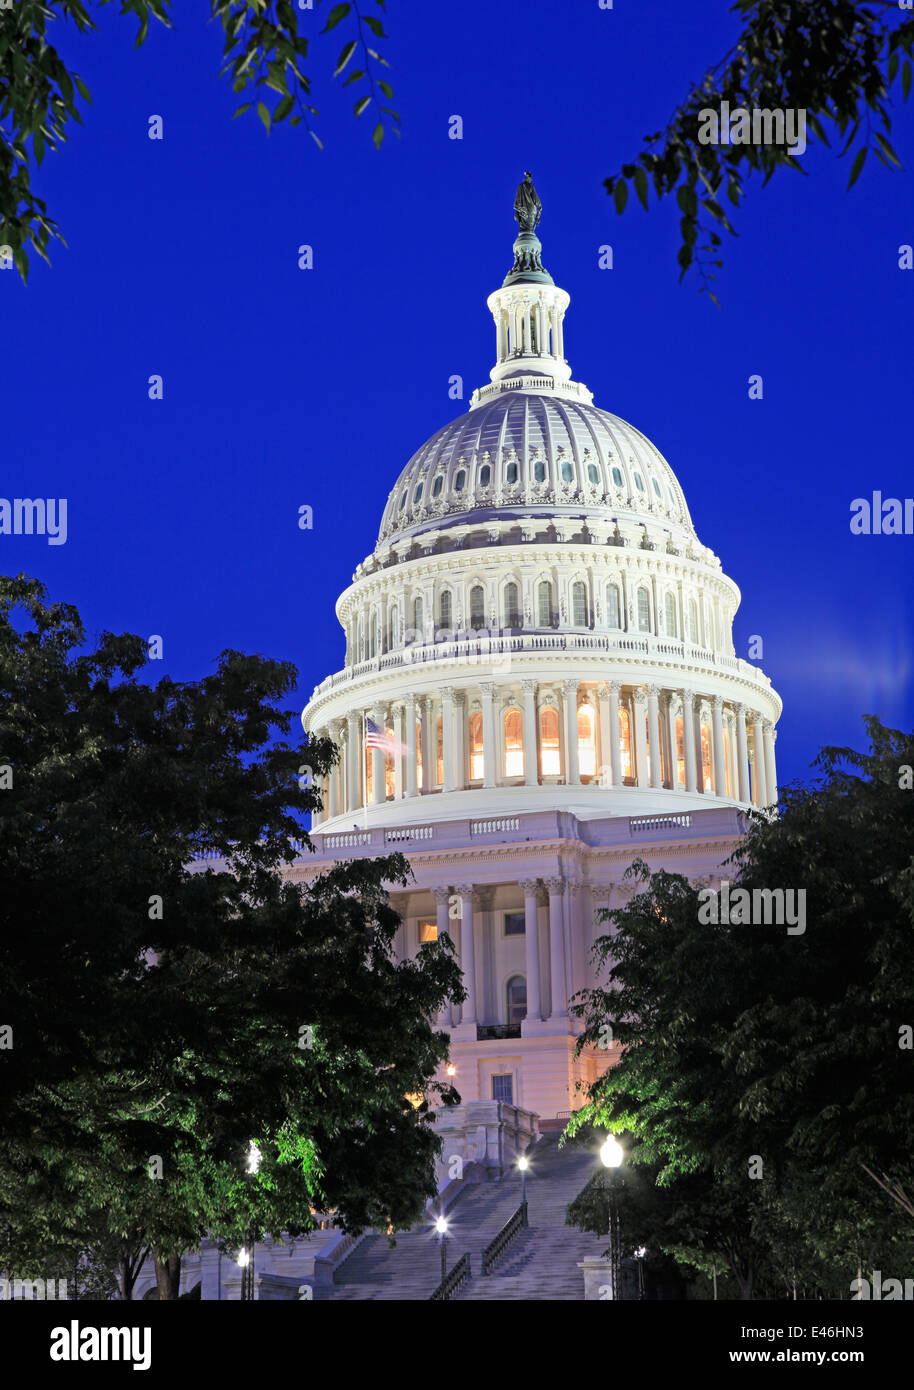 El edificio del Capitolio de EEUU al anochecer, Washington, D.C. Foto de stock